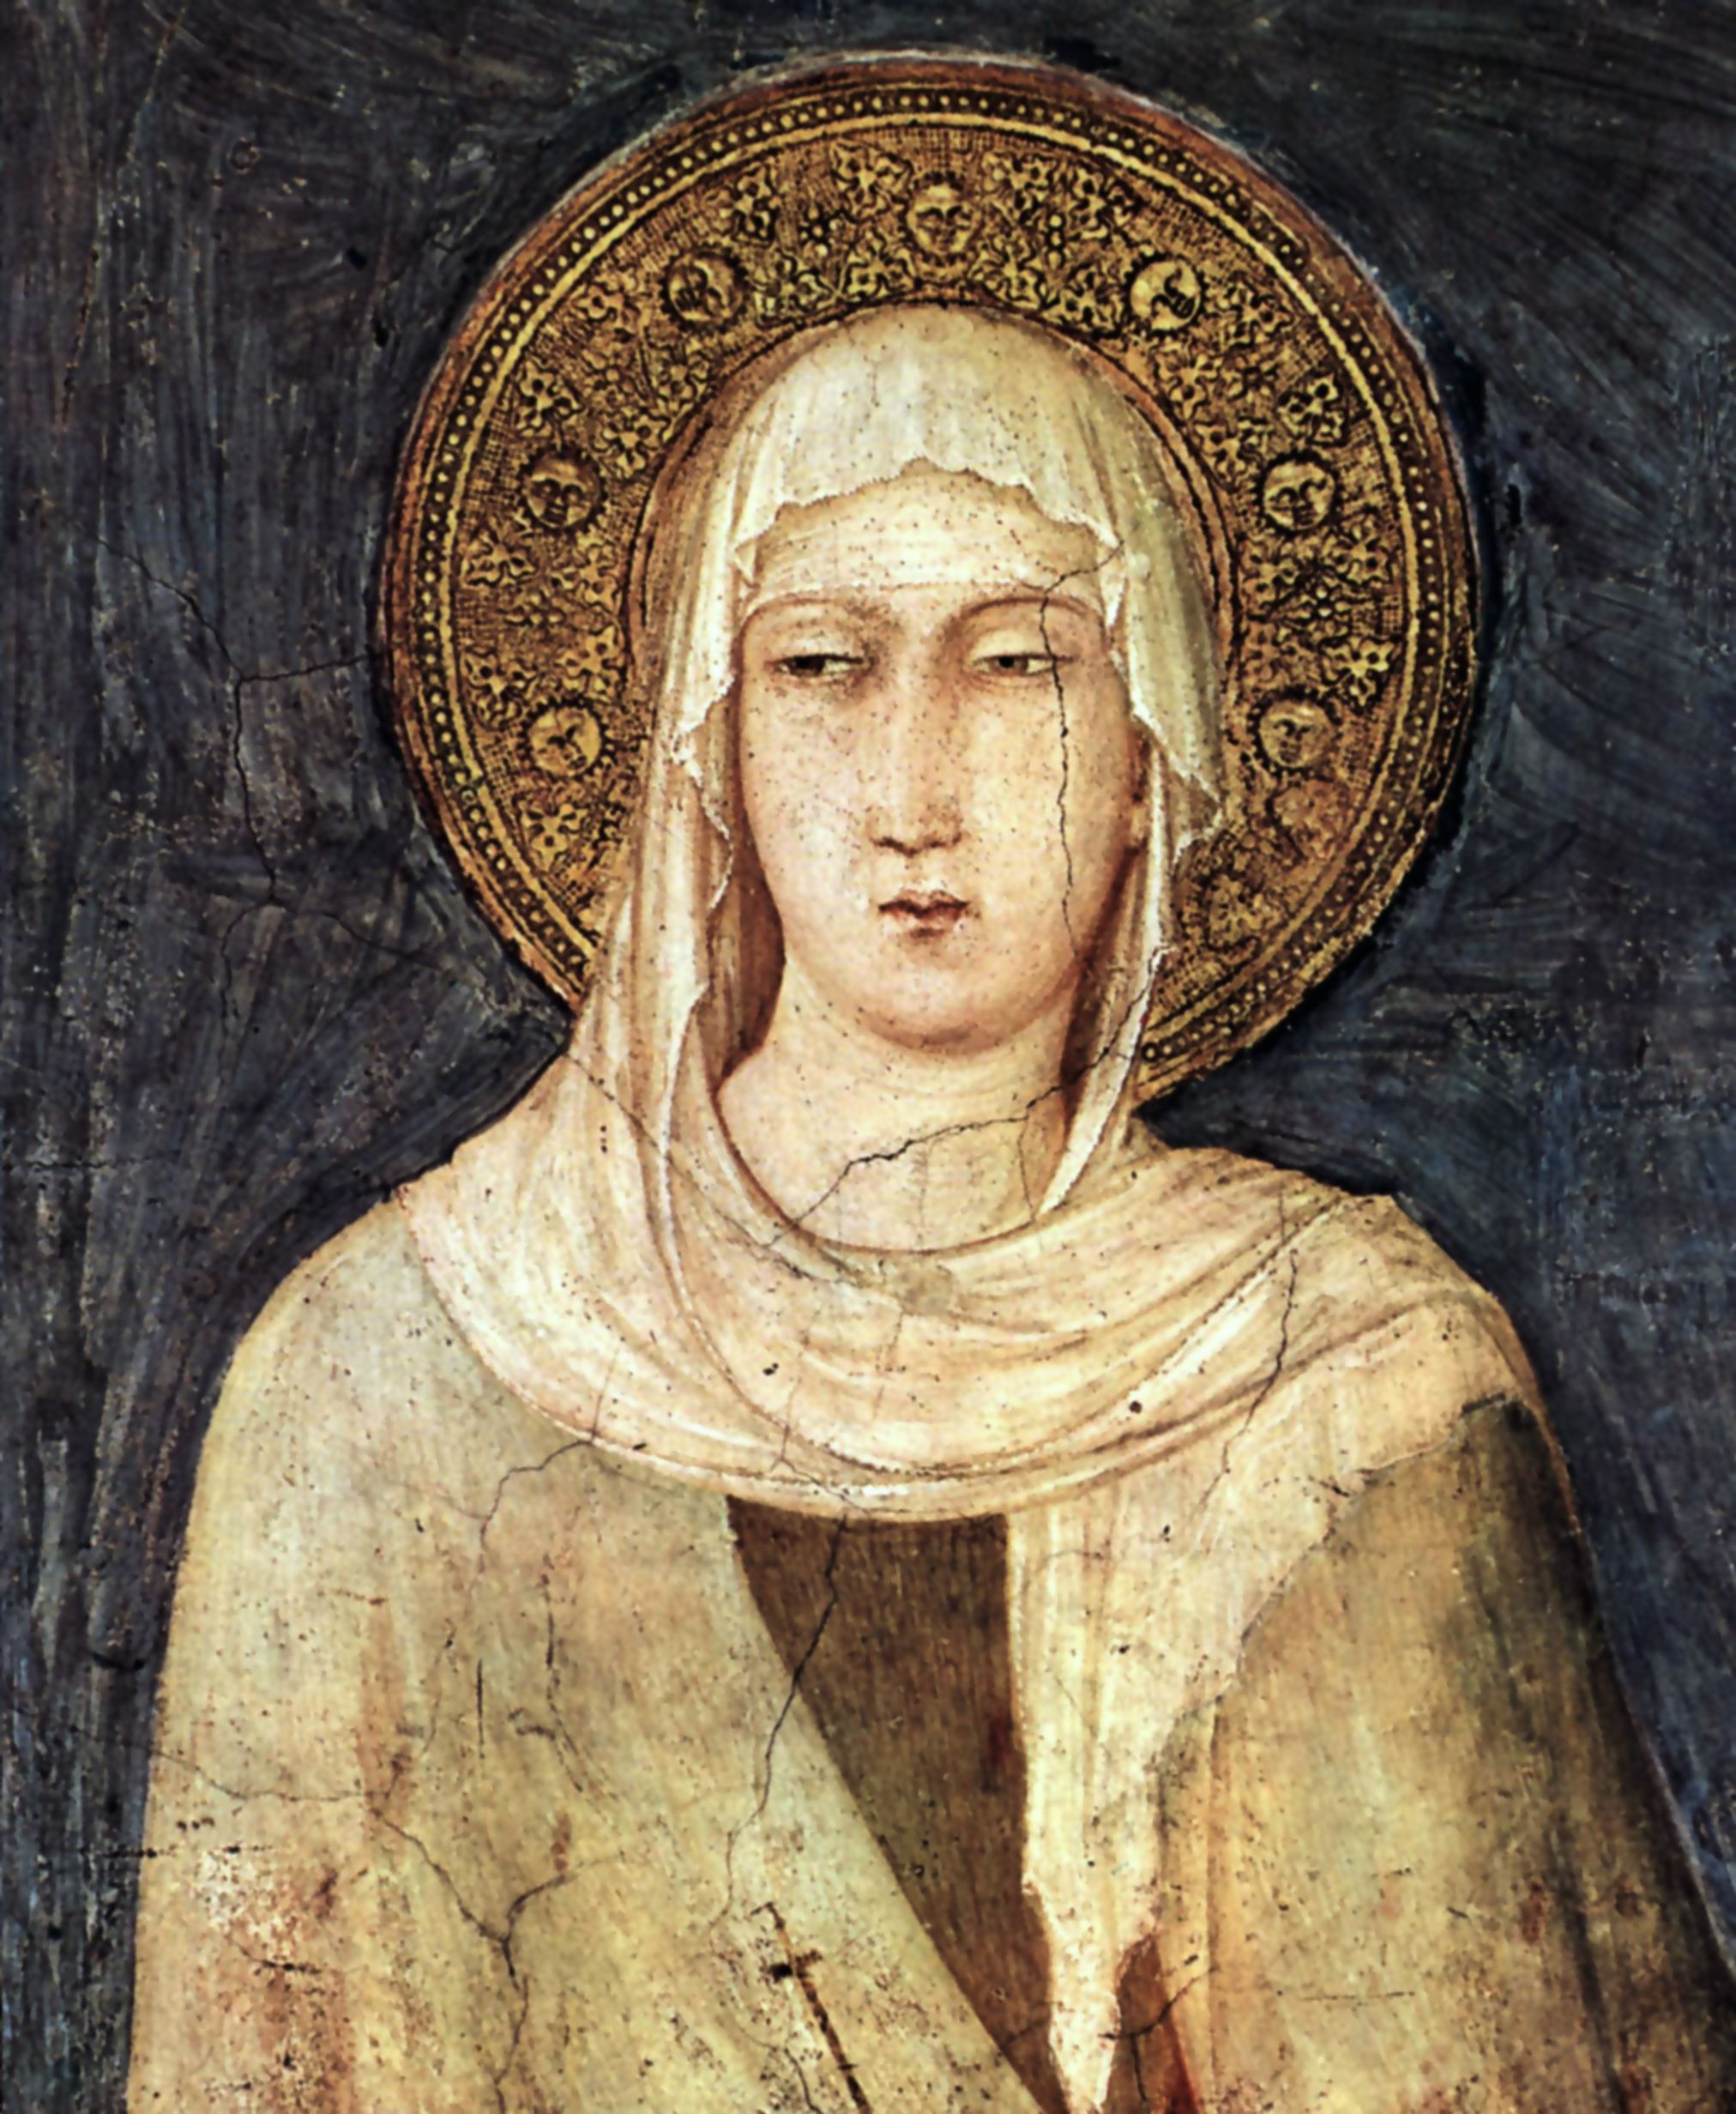 Simone Martini (1285-1344): Jakoba av Settesoli (hun gjenkjennes på de syv solene [Settesoli] som er malt i glorien), freskesyklus med scener fra den hellige Martin av Tours’ liv i Martinskapellet i underkirken i basilikaen San Francesco i Assisi